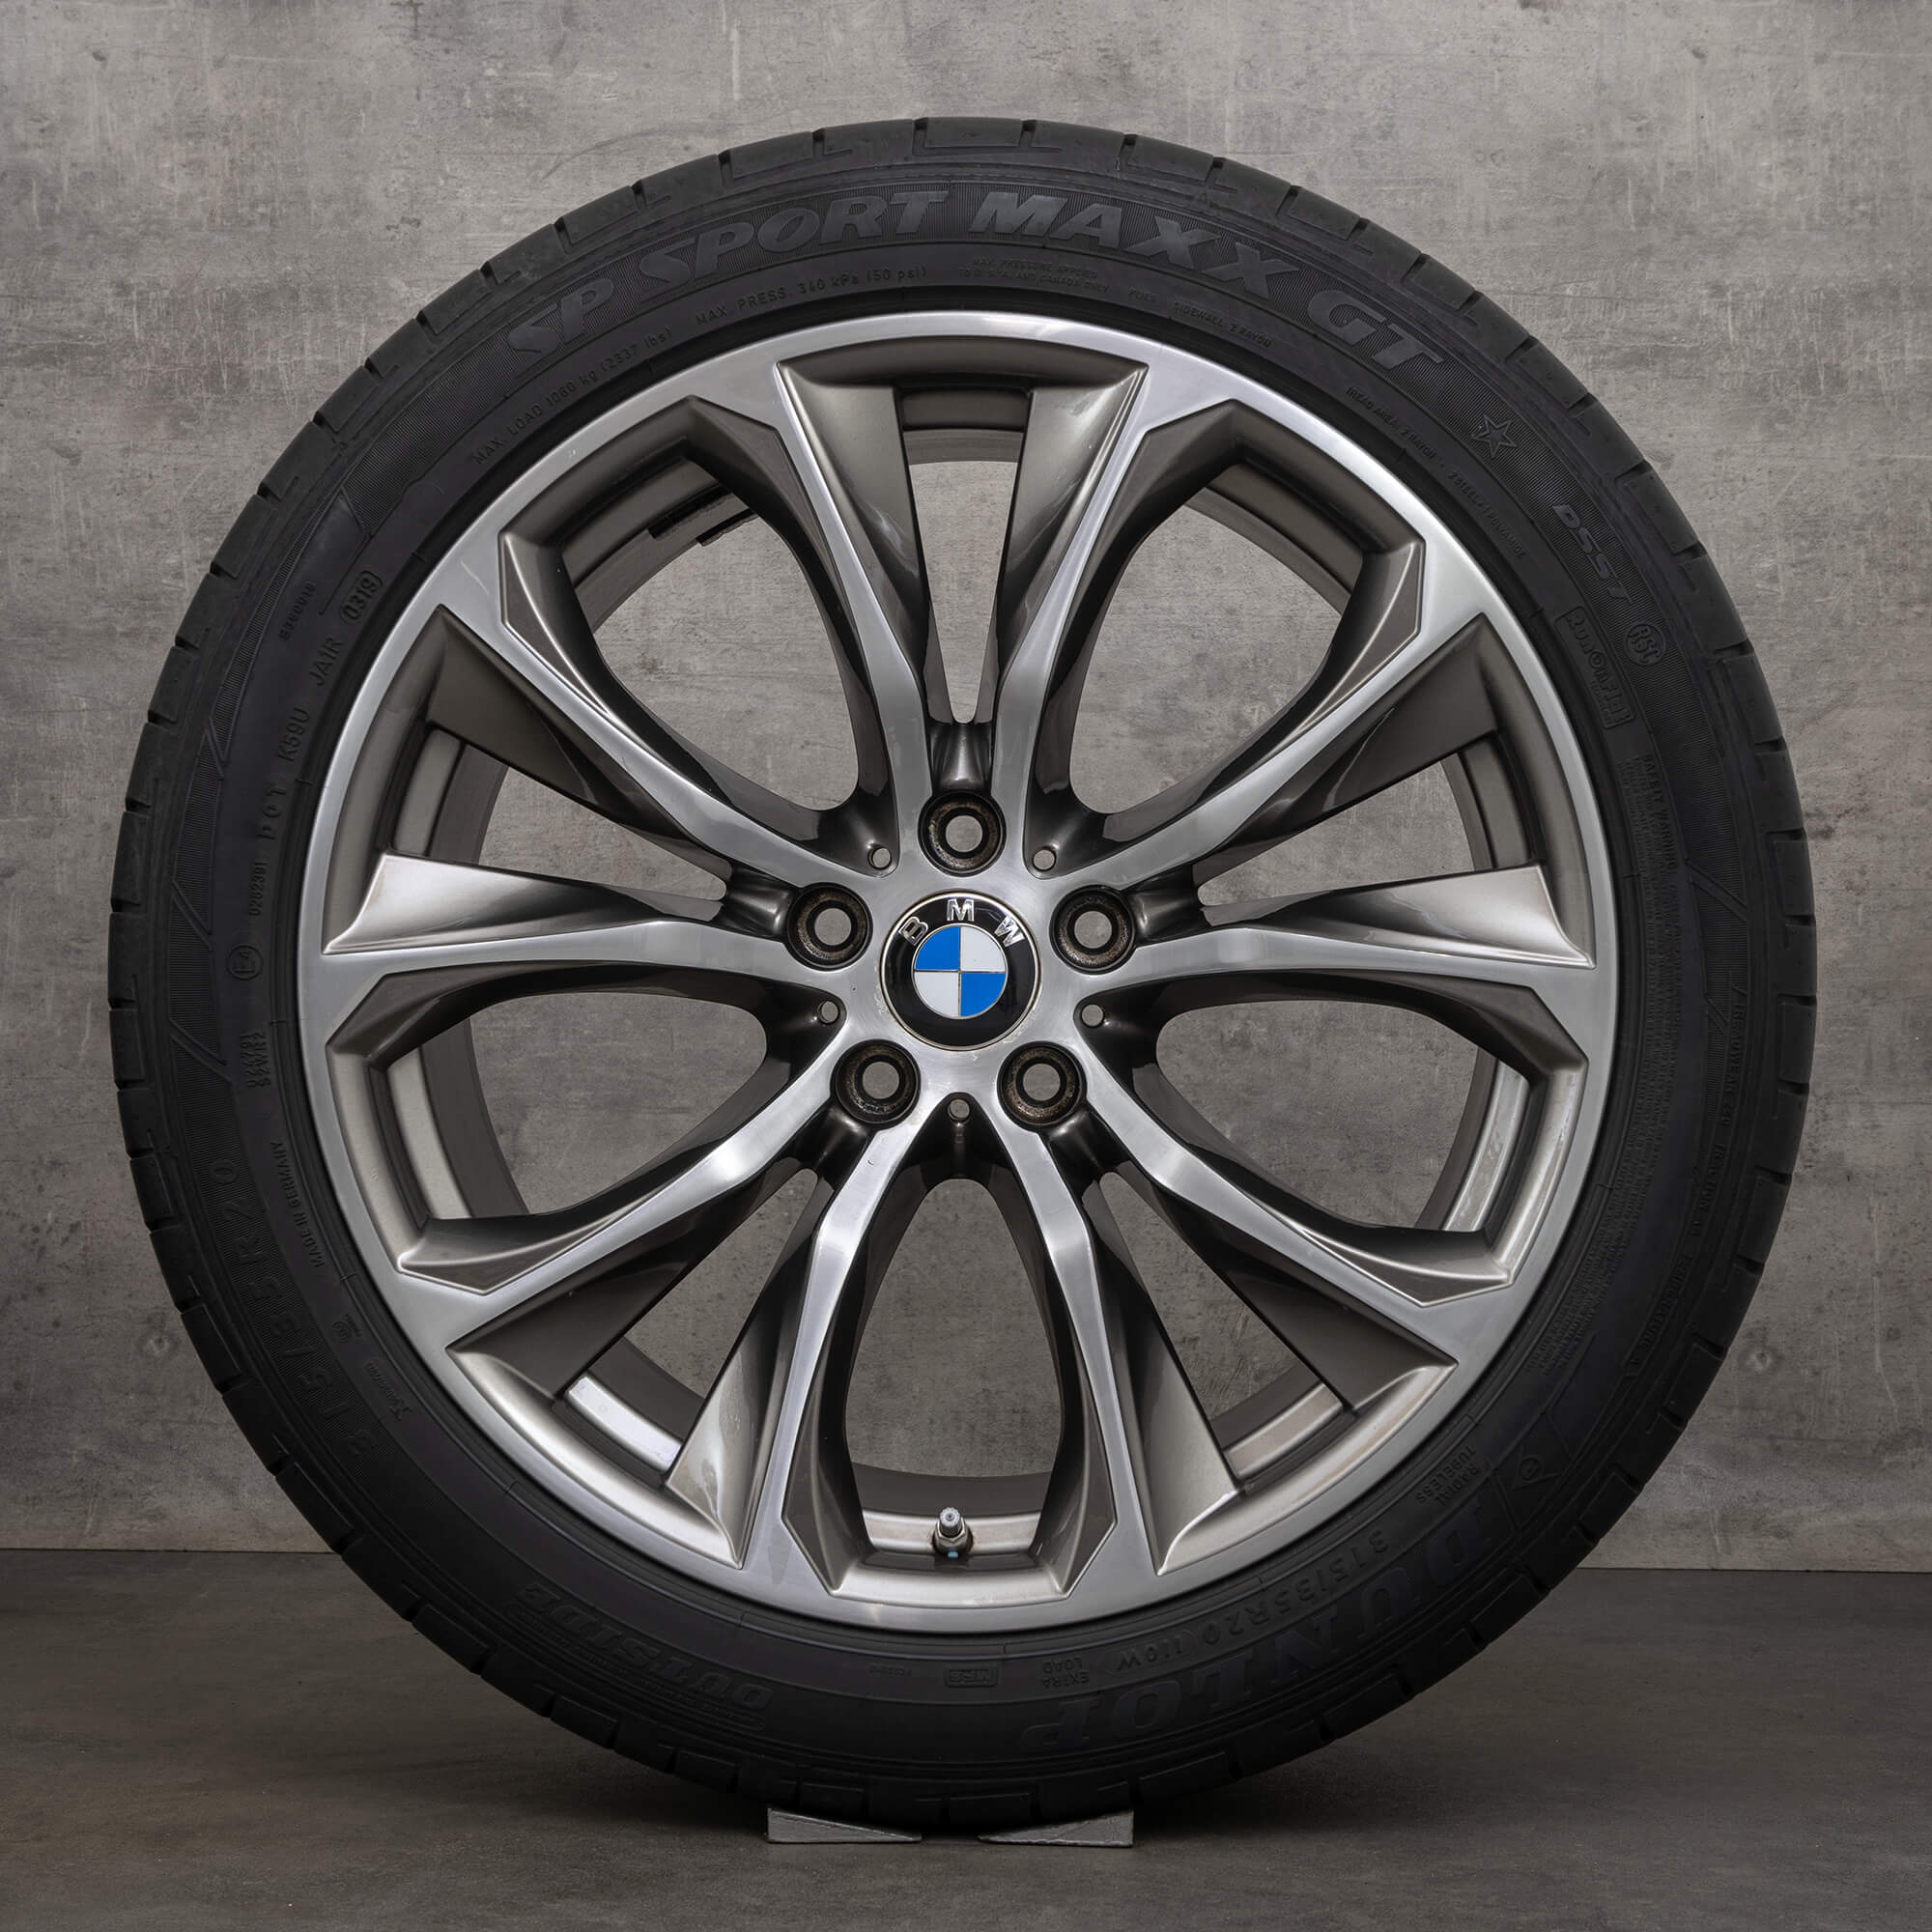 BMW 20 inch alloy rims X5 F15 E70 X6 F16 summer wheels tires